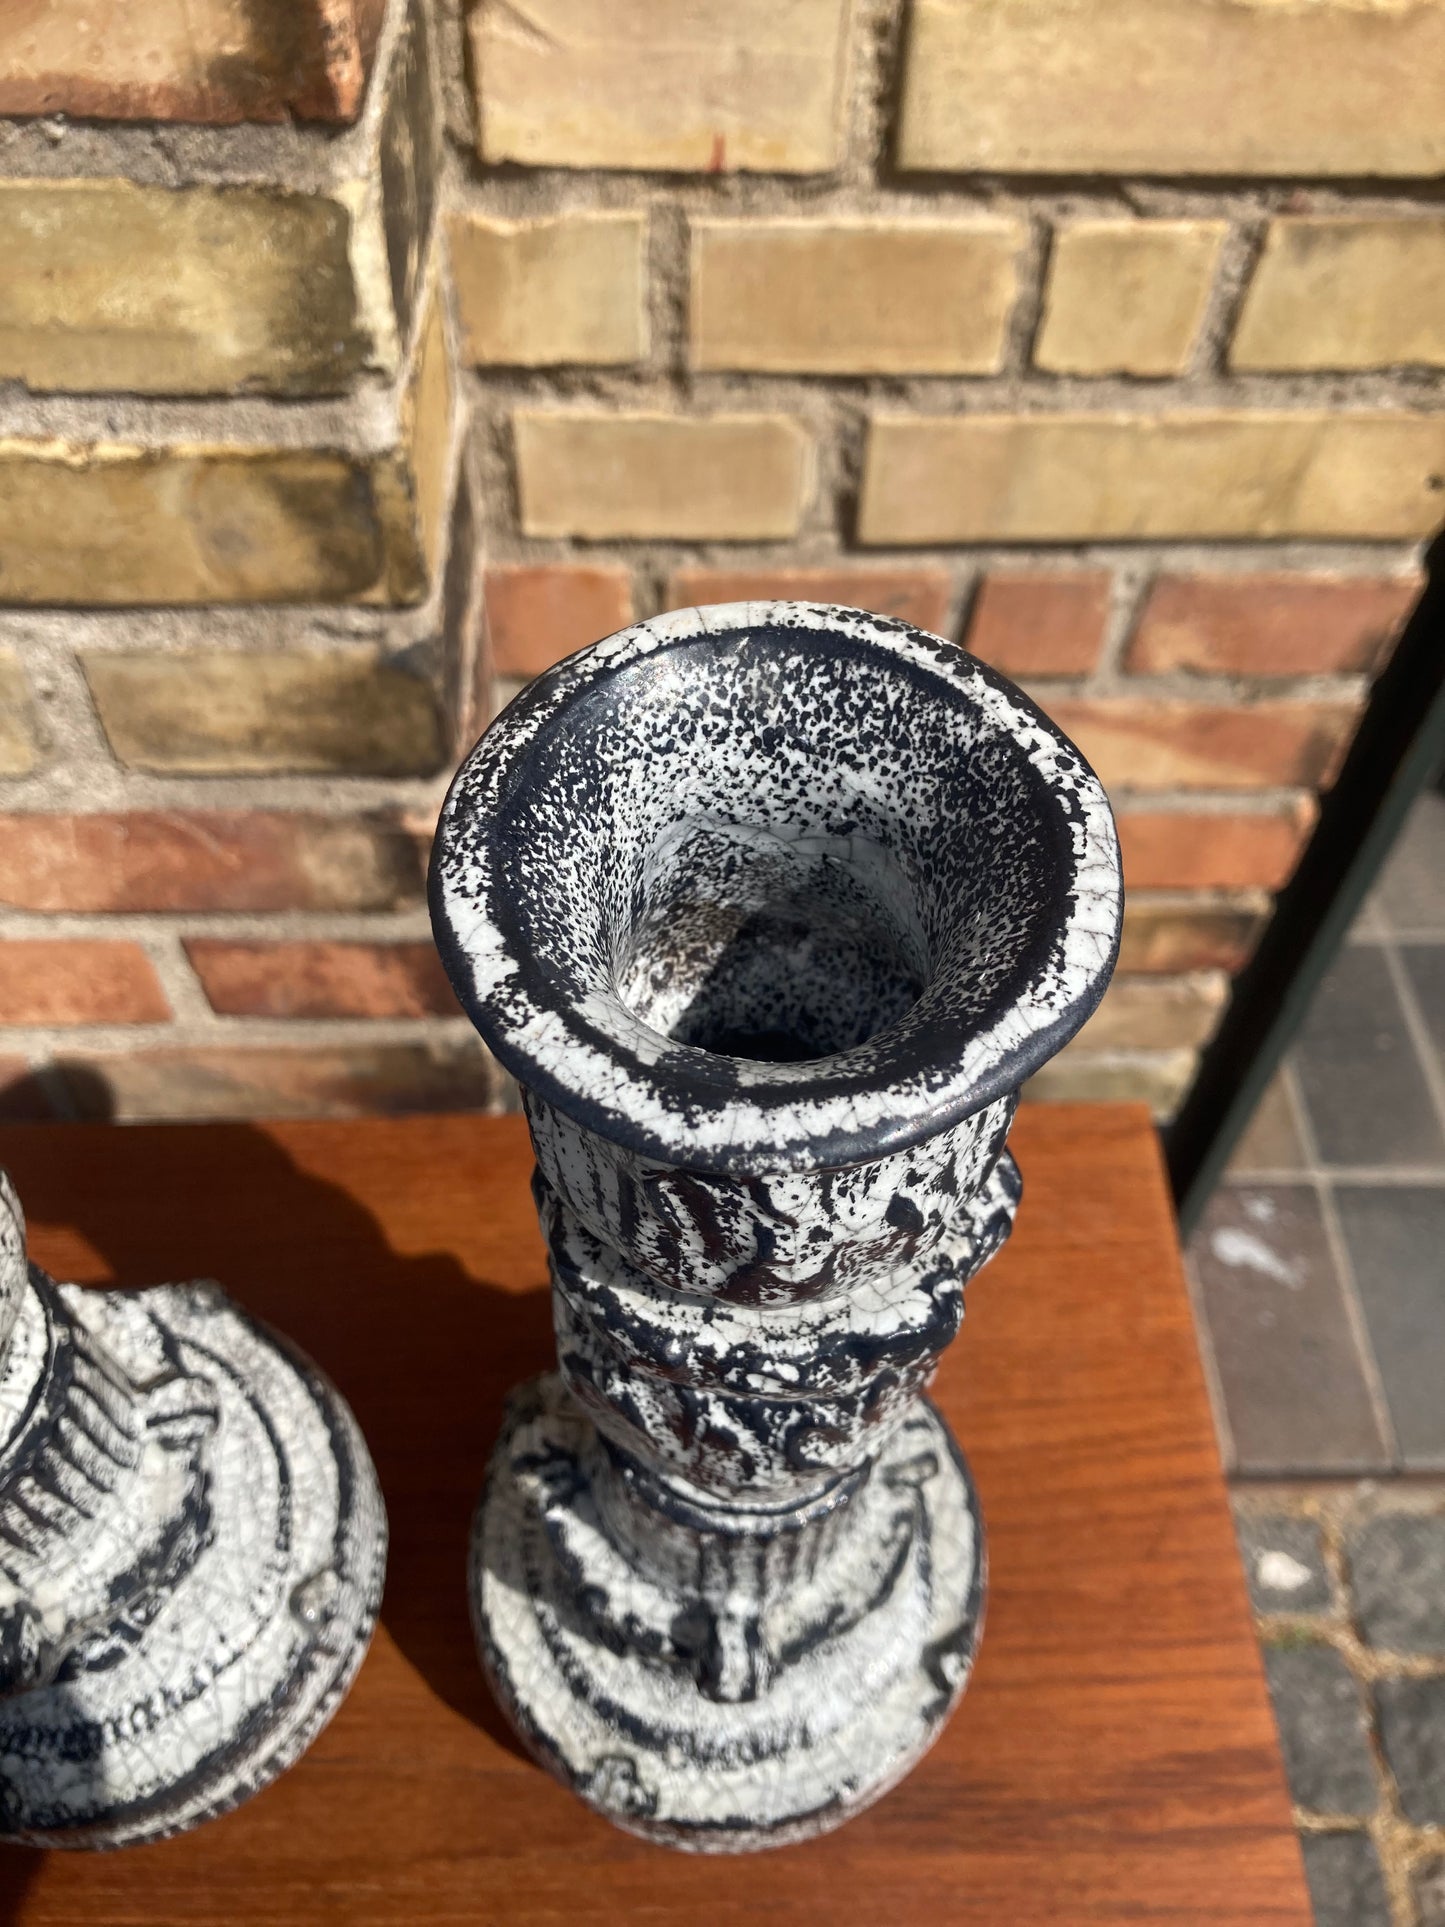 ケーラーのアッシュグレー釉の美しい花瓶 2 個、スヴェンド・ハンマースホイのデザイン - no. 0250